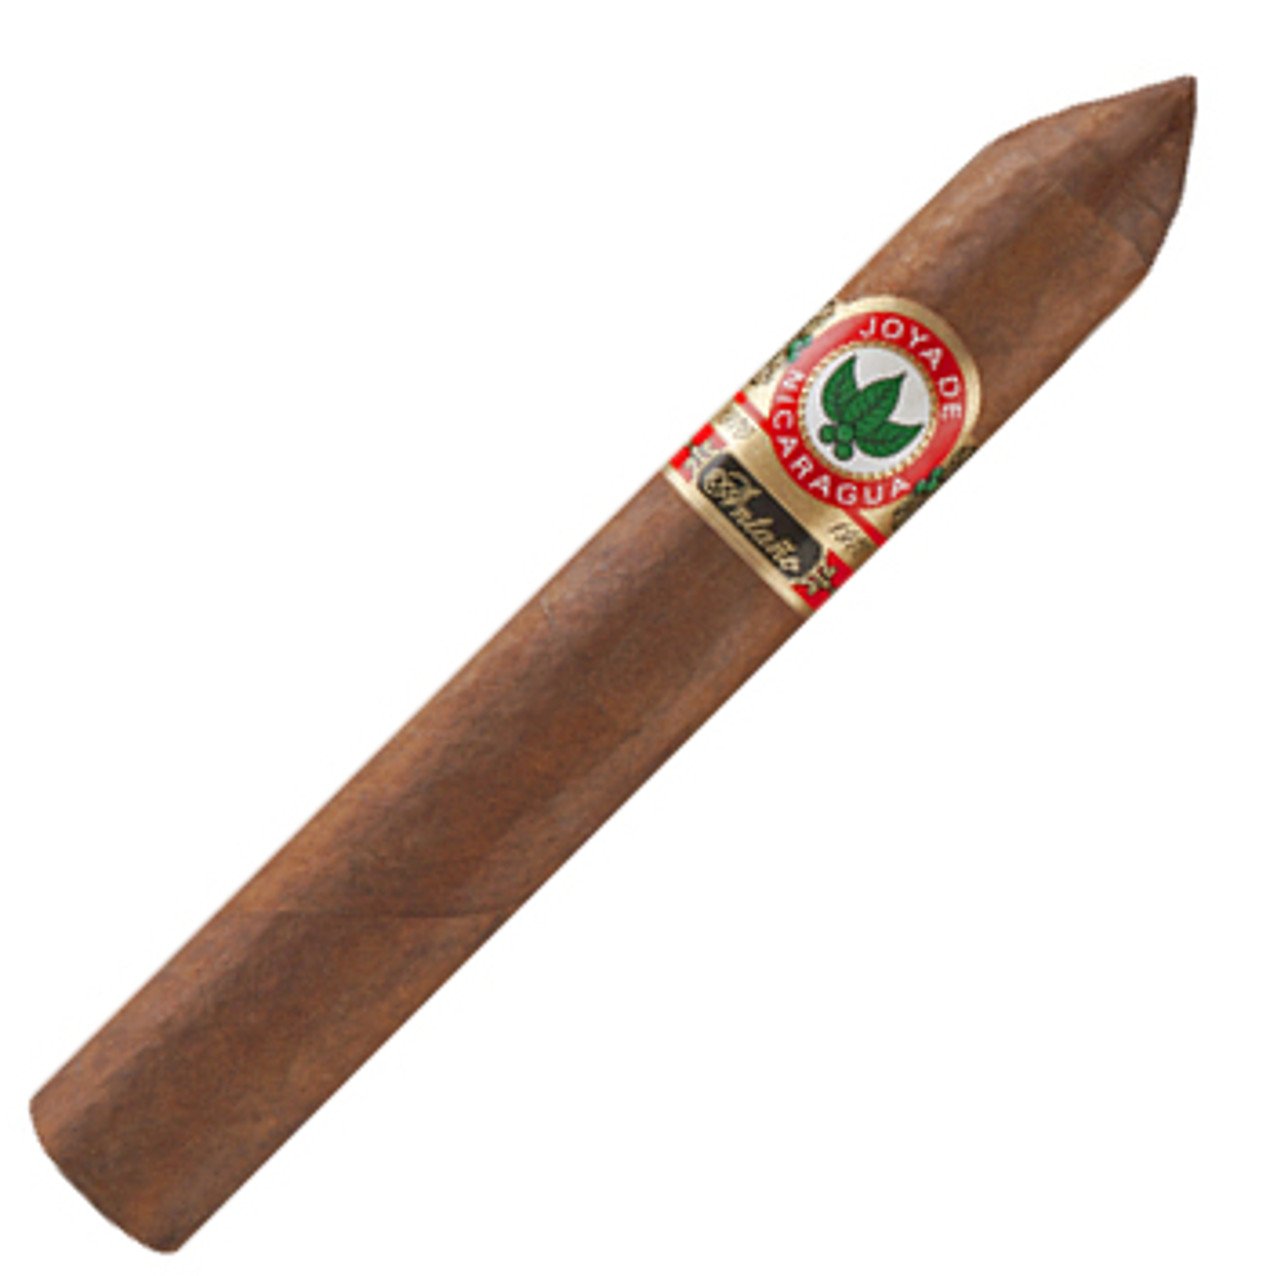 Joya de Nicaragua Antano Belicoso Cigars - 6 x 54 Single